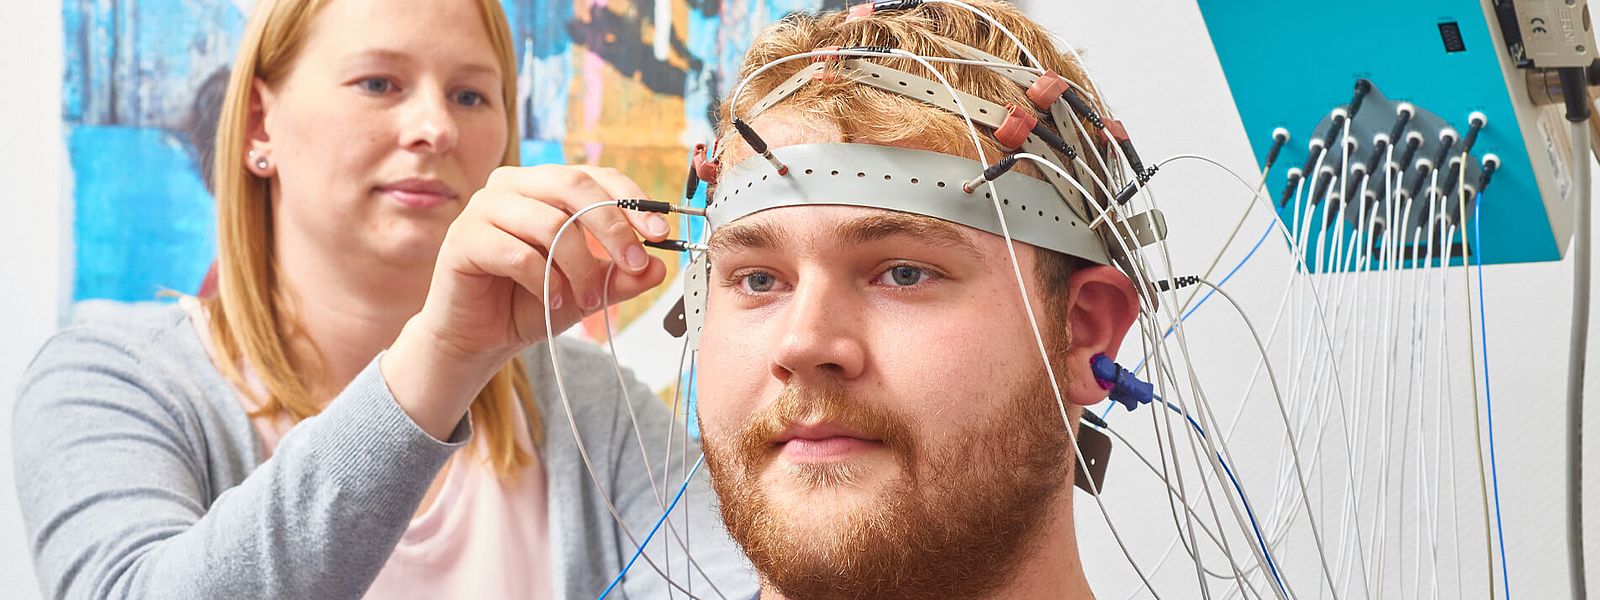 Mitarbeiterin legt Mann ein EEG am Kopf an mzg-mvz2.jpg